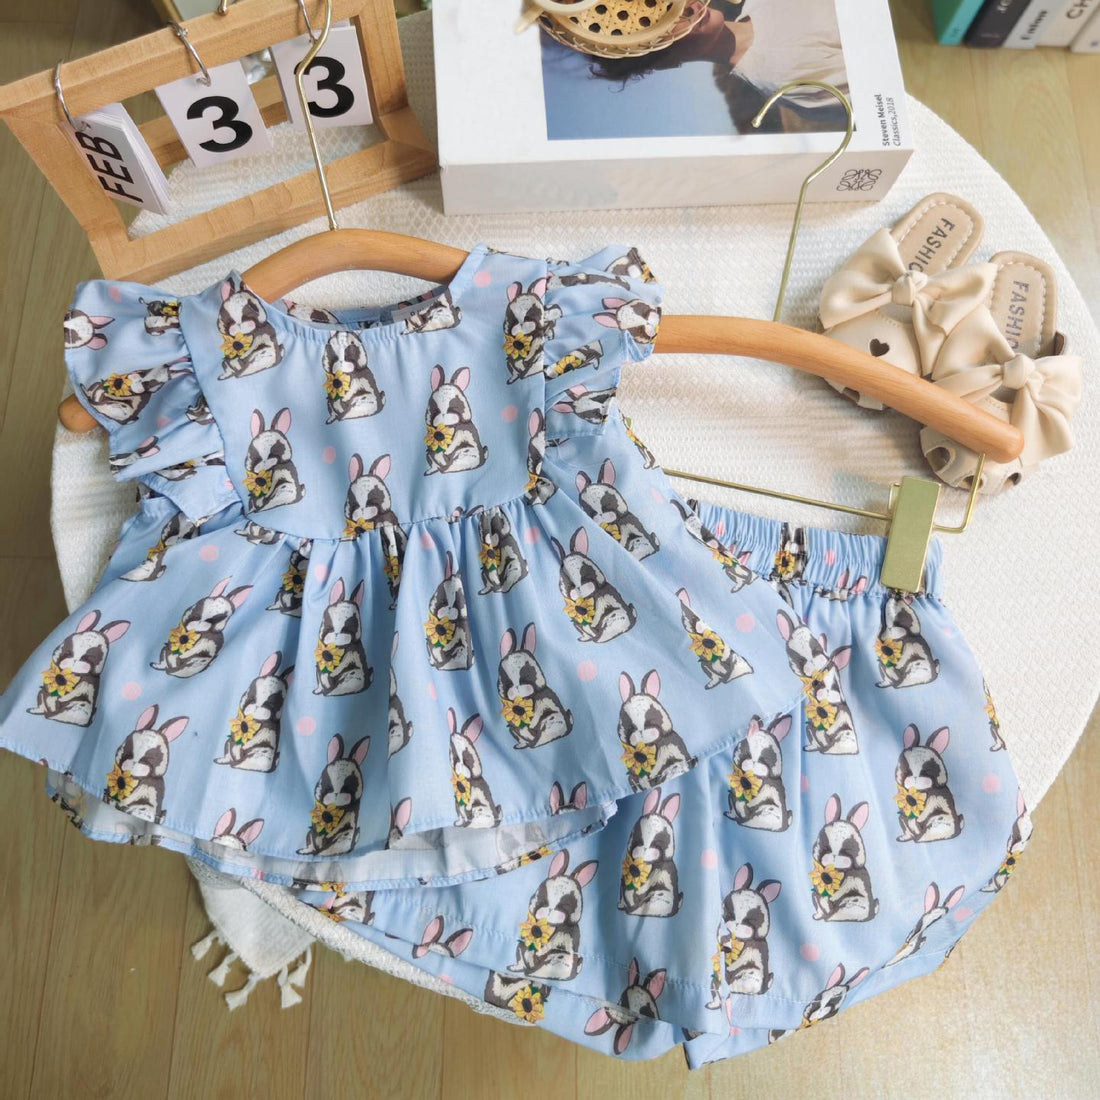 [363731] - Setelan Baju Ruffles Tanpa Lengan Celana Pendek Fashion Anak Perempuan - Motif Rabbit Flower